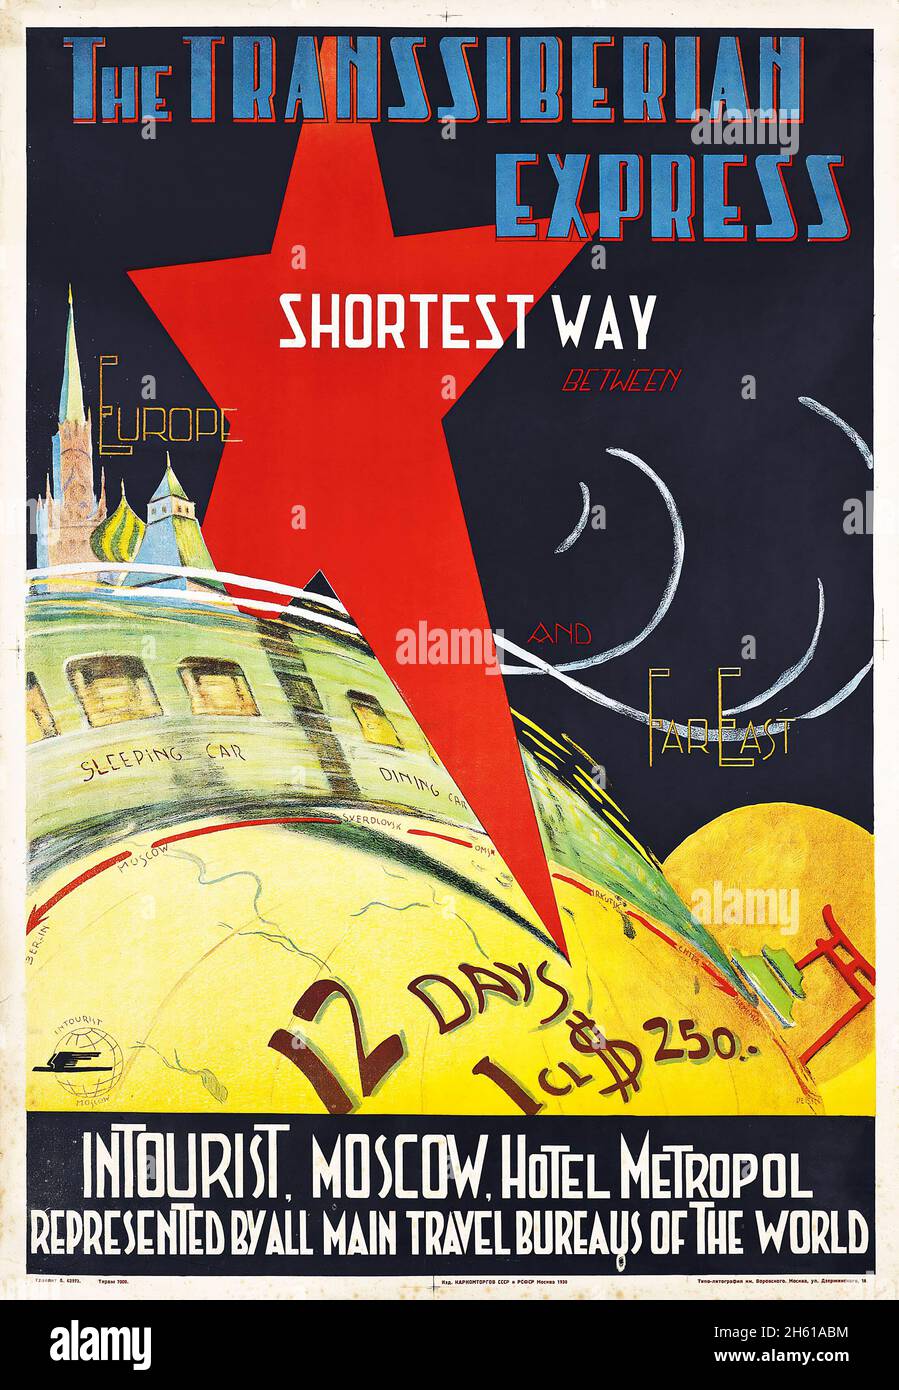 P. Merinov – LA TRANSSIBERIANA EXPRESS, LA STRADA PIÙ BREVE TRA EUROPA E ESTREMO ORIENTE, poster di viaggio russo d'epoca 1930. Foto Stock